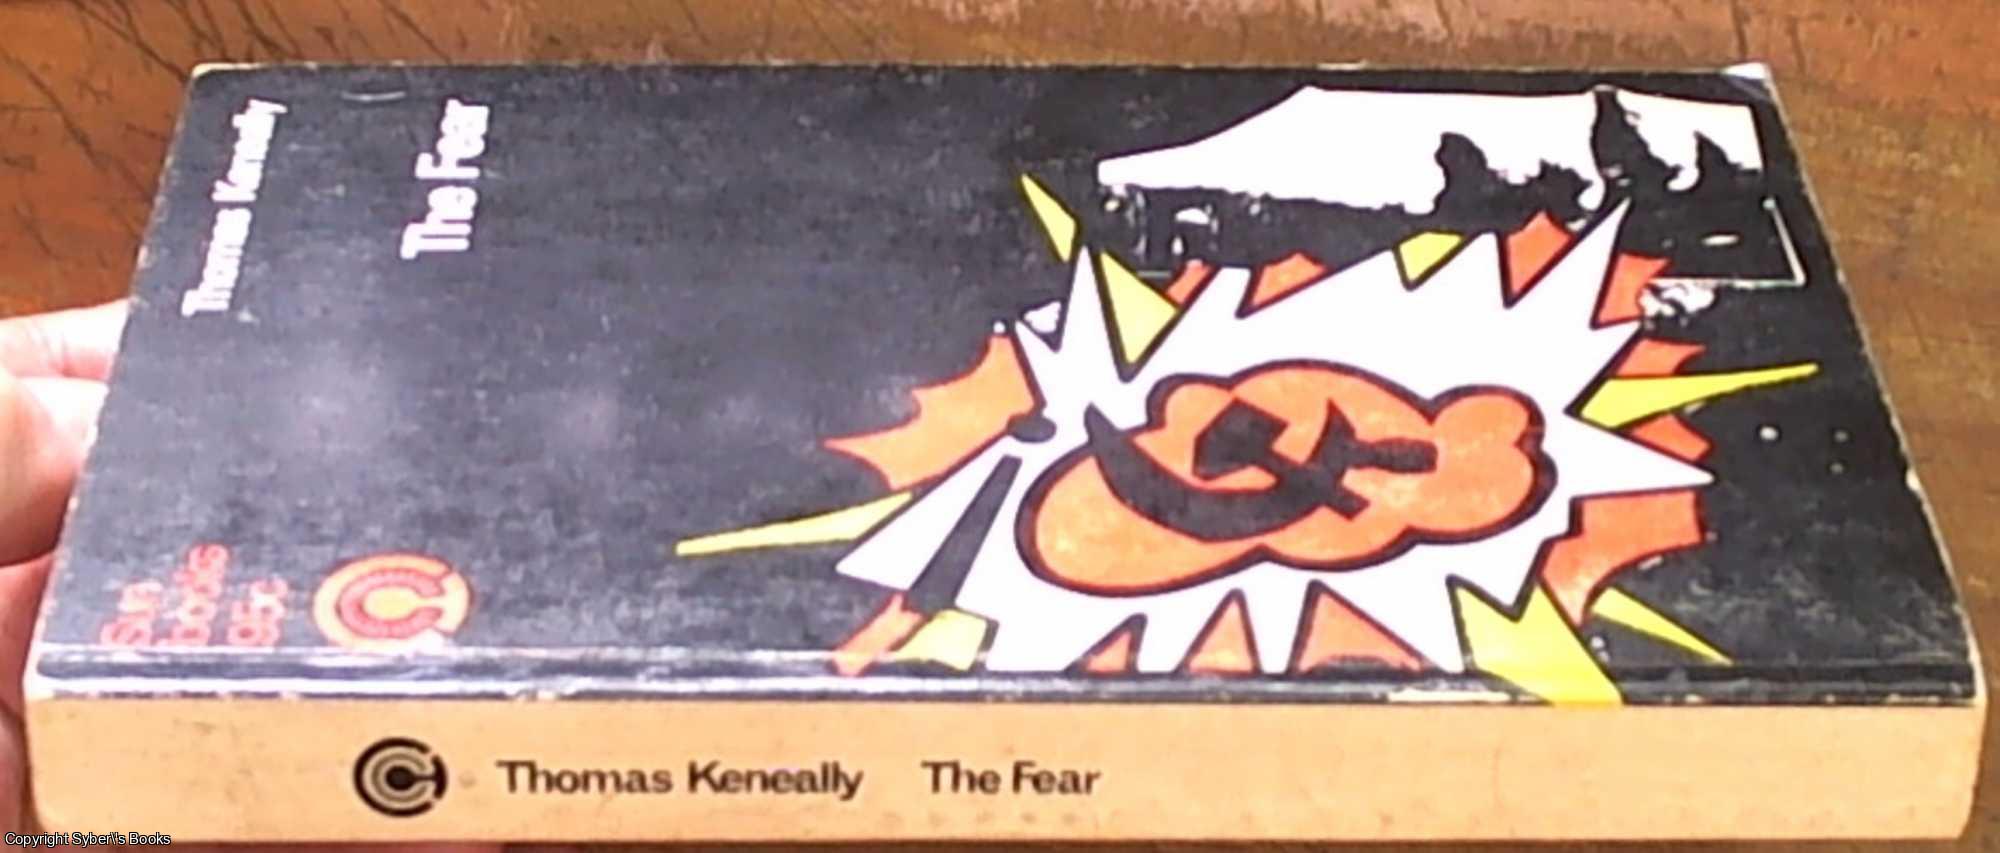 Keneally, Thomas - The Fear